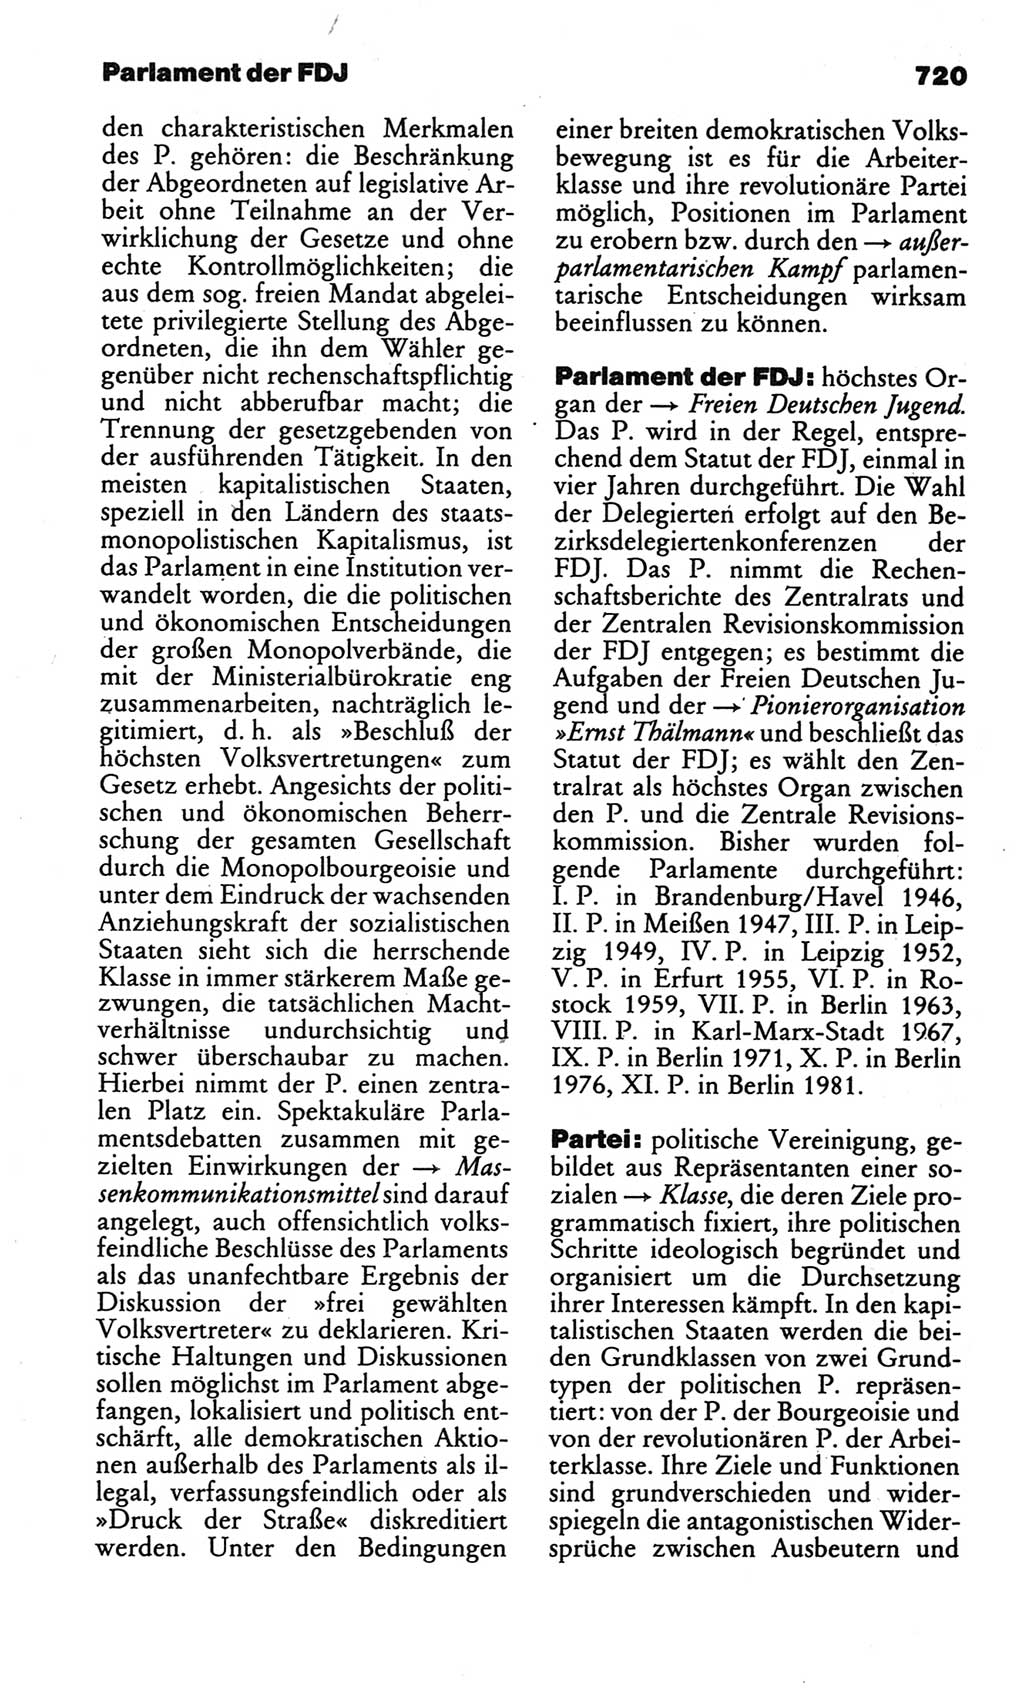 Kleines politisches Wörterbuch [Deutsche Demokratische Republik (DDR)] 1986, Seite 720 (Kl. pol. Wb. DDR 1986, S. 720)